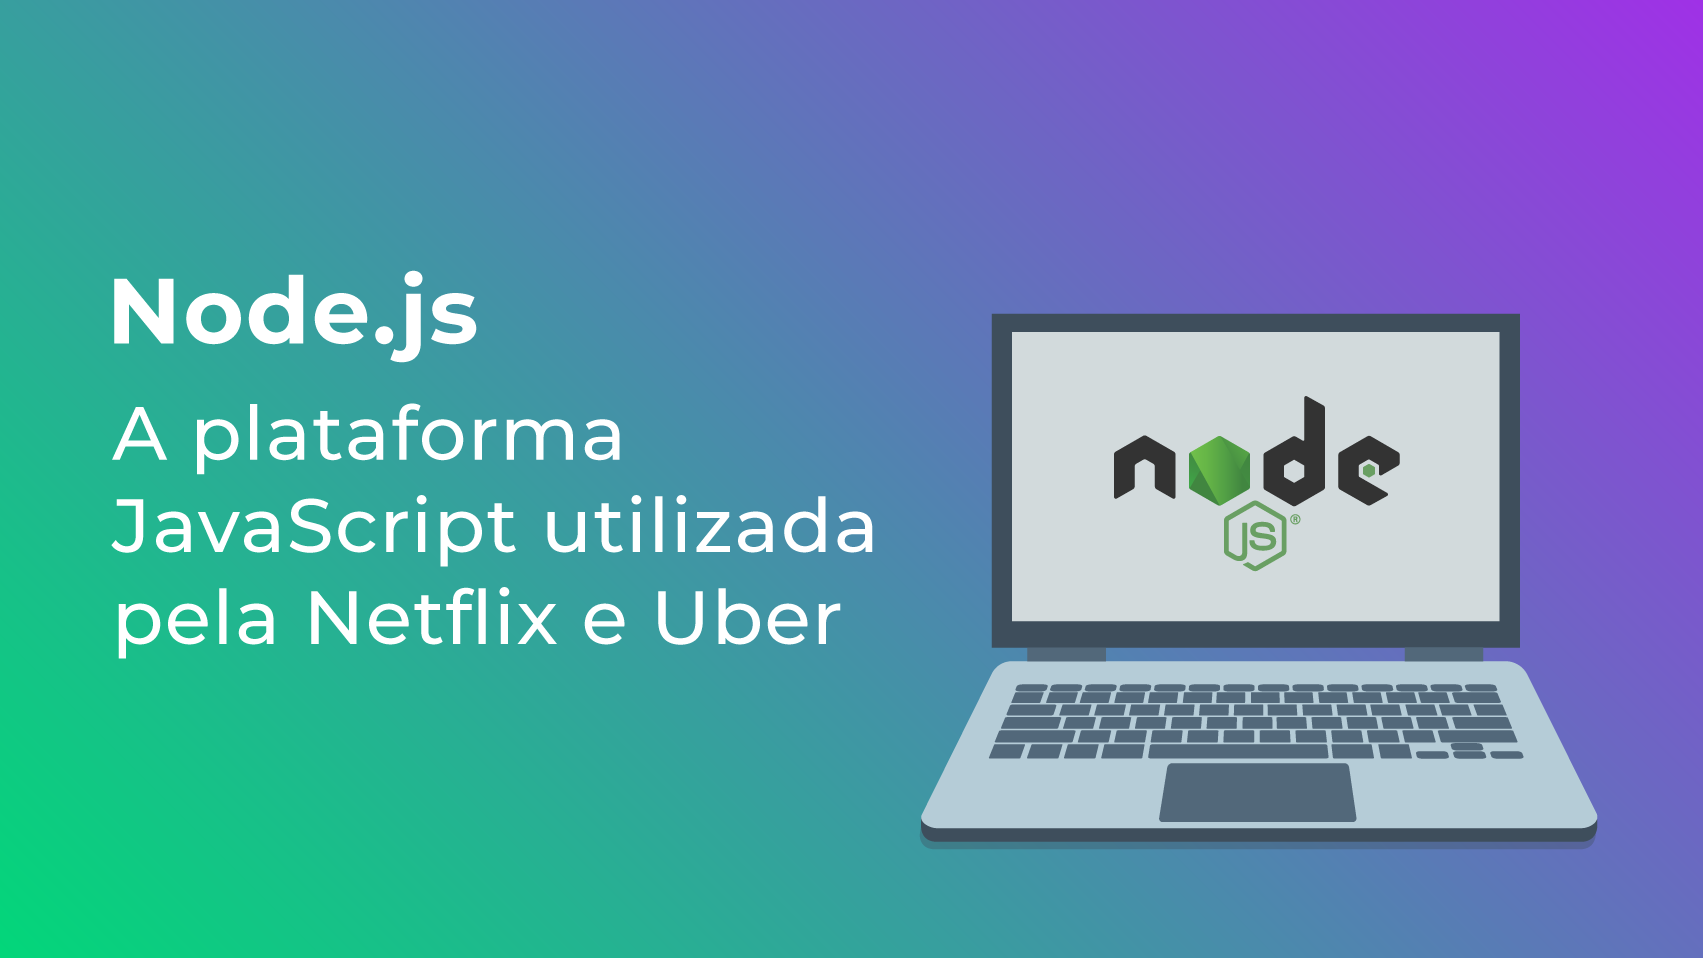 Node.js: a plataforma JavaScript utilizada pela Netflix e Uber